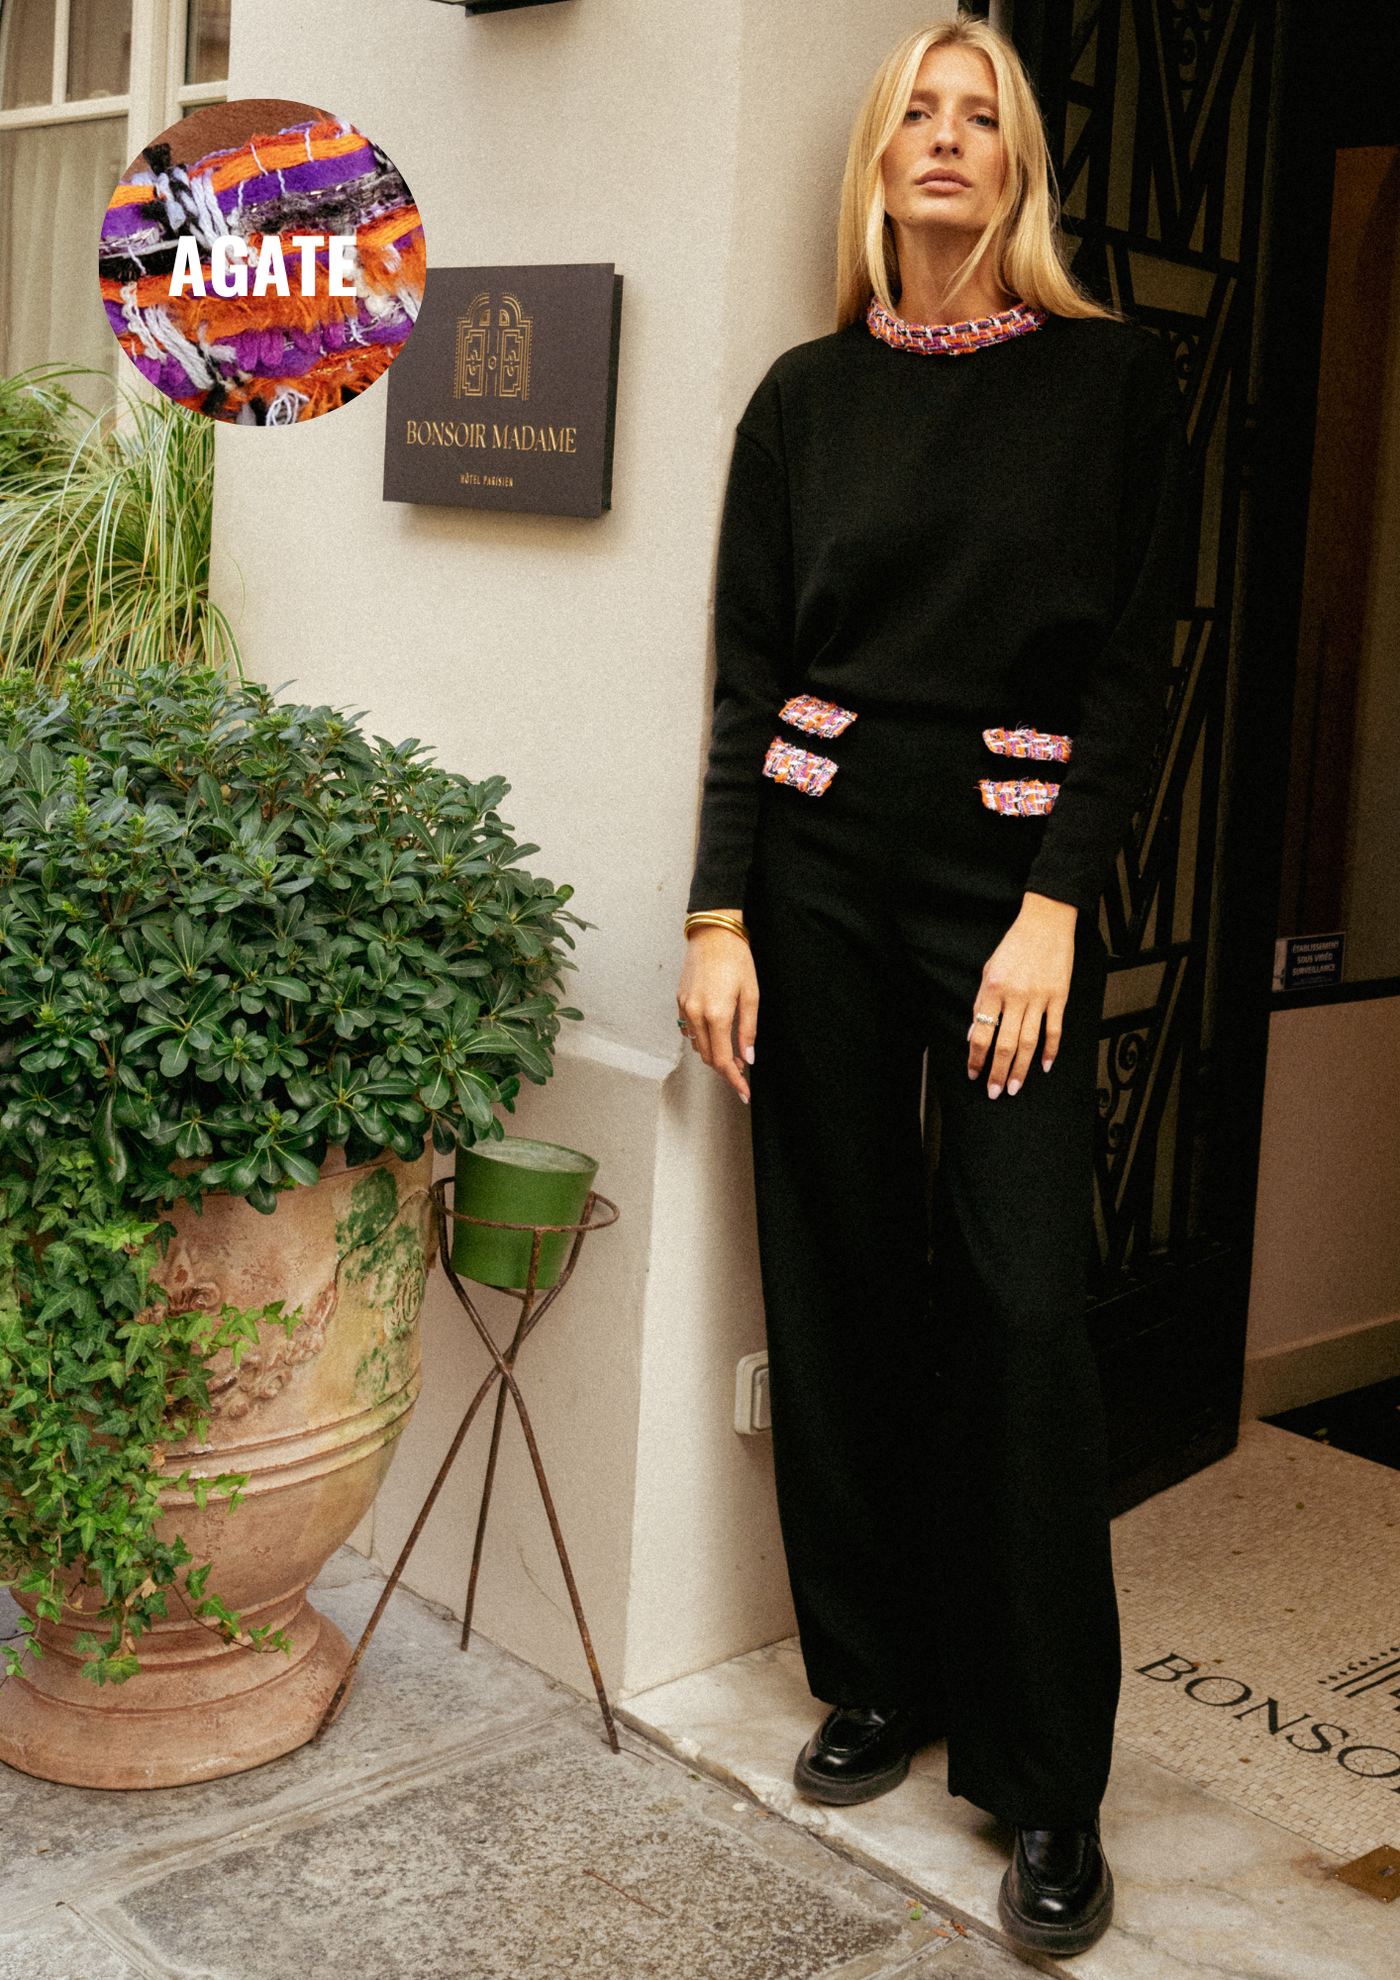 Pantalon Couture - Crêpe de laine Noir & Tweed d'exception